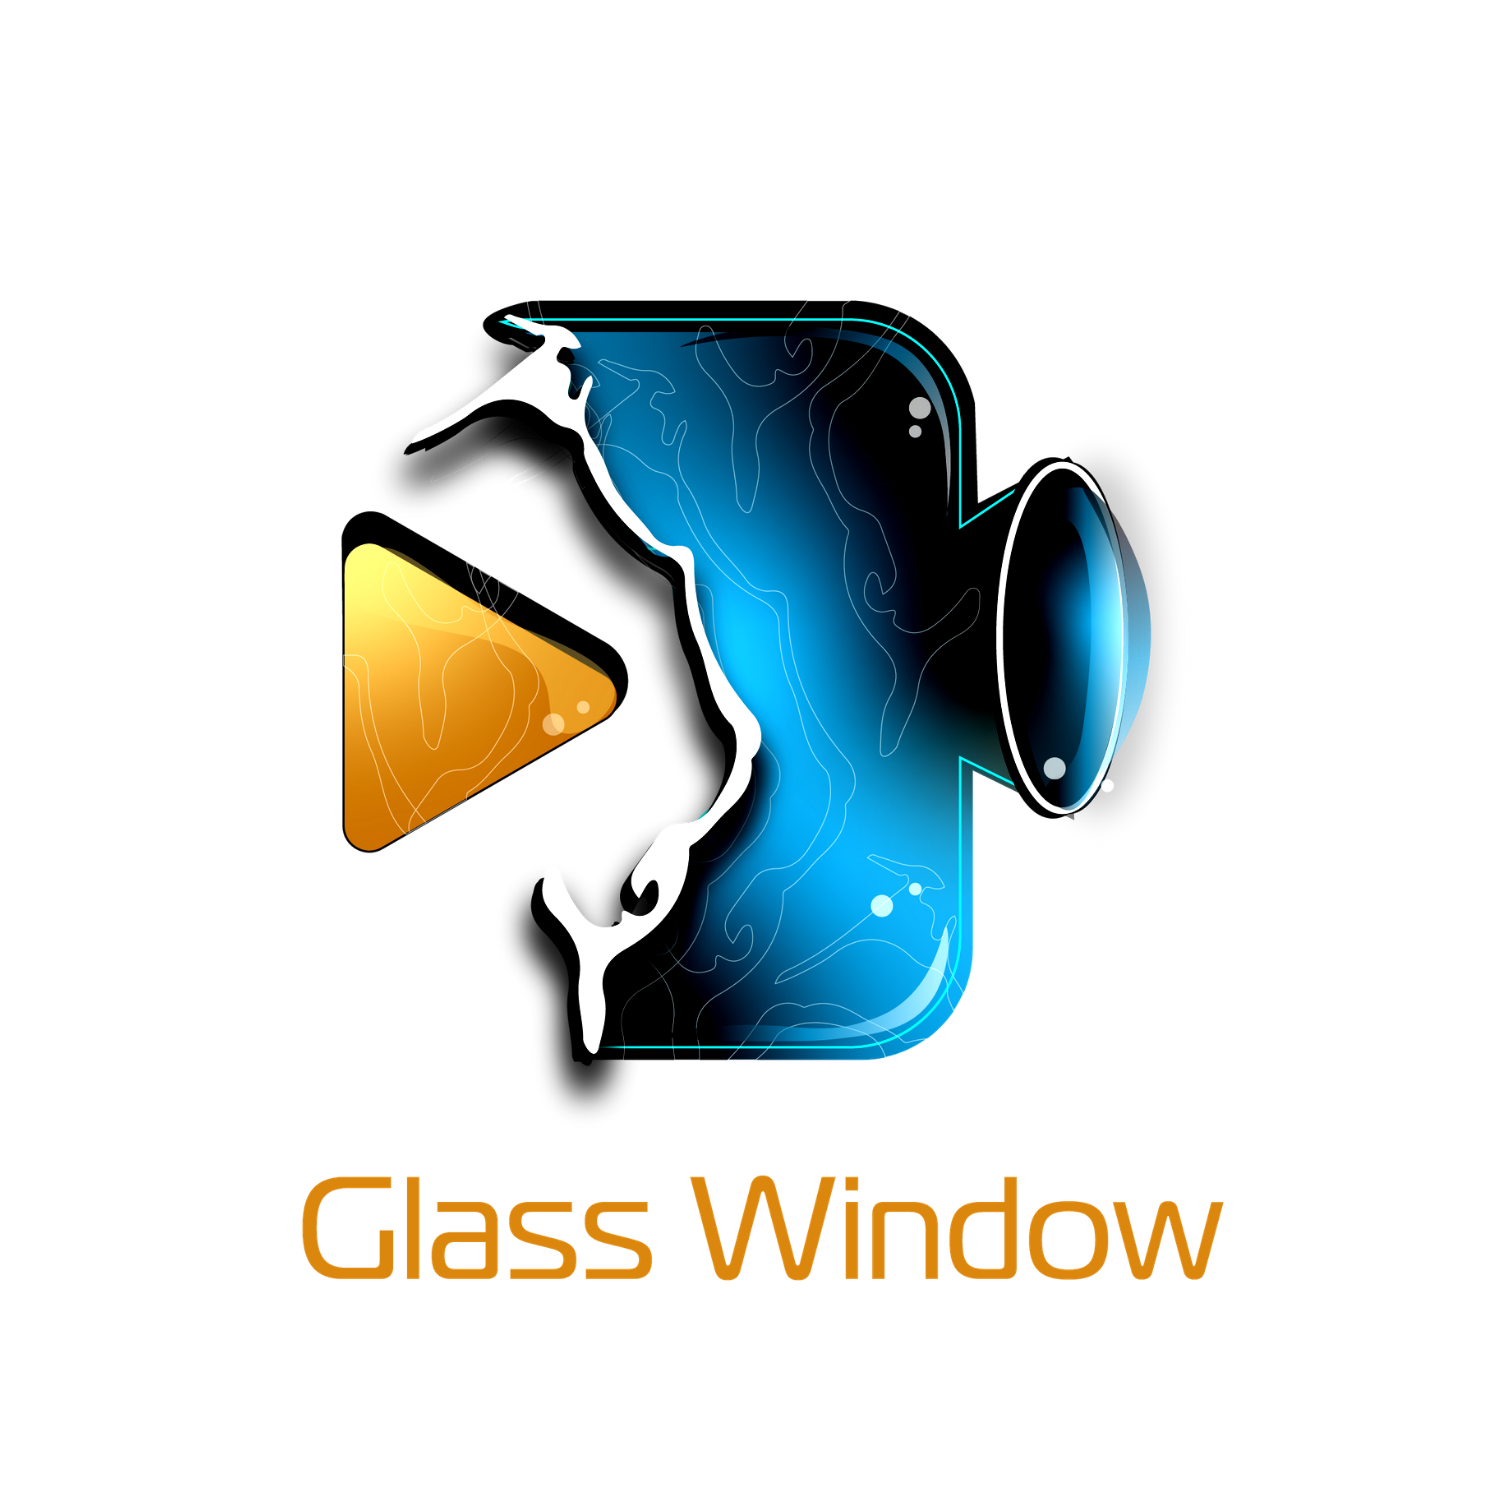 Glass Window Studios